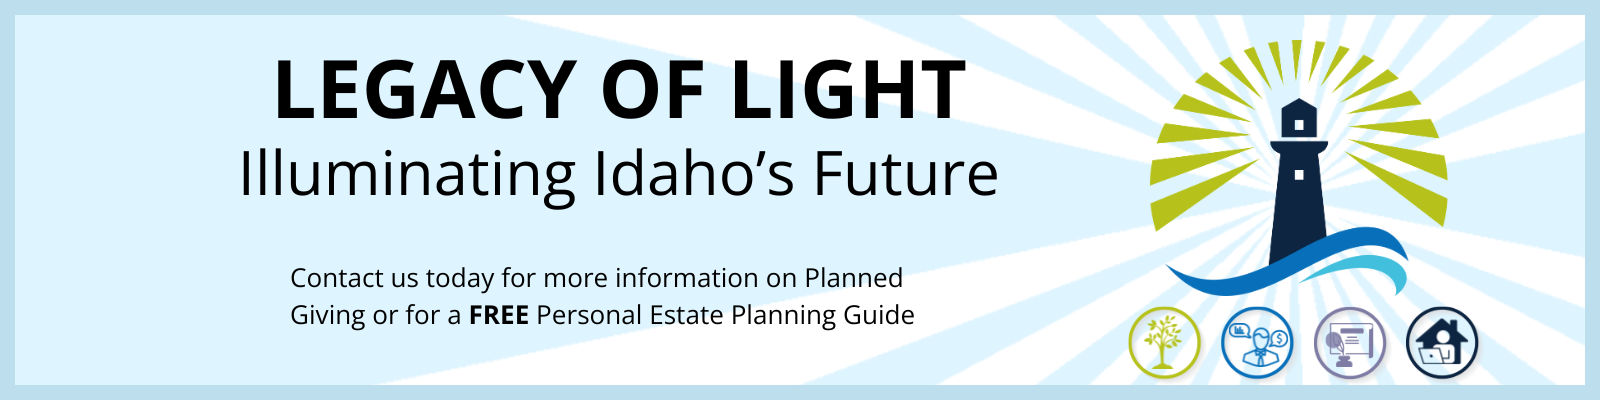 Legacy of Light: Illuminating Idaho's Future